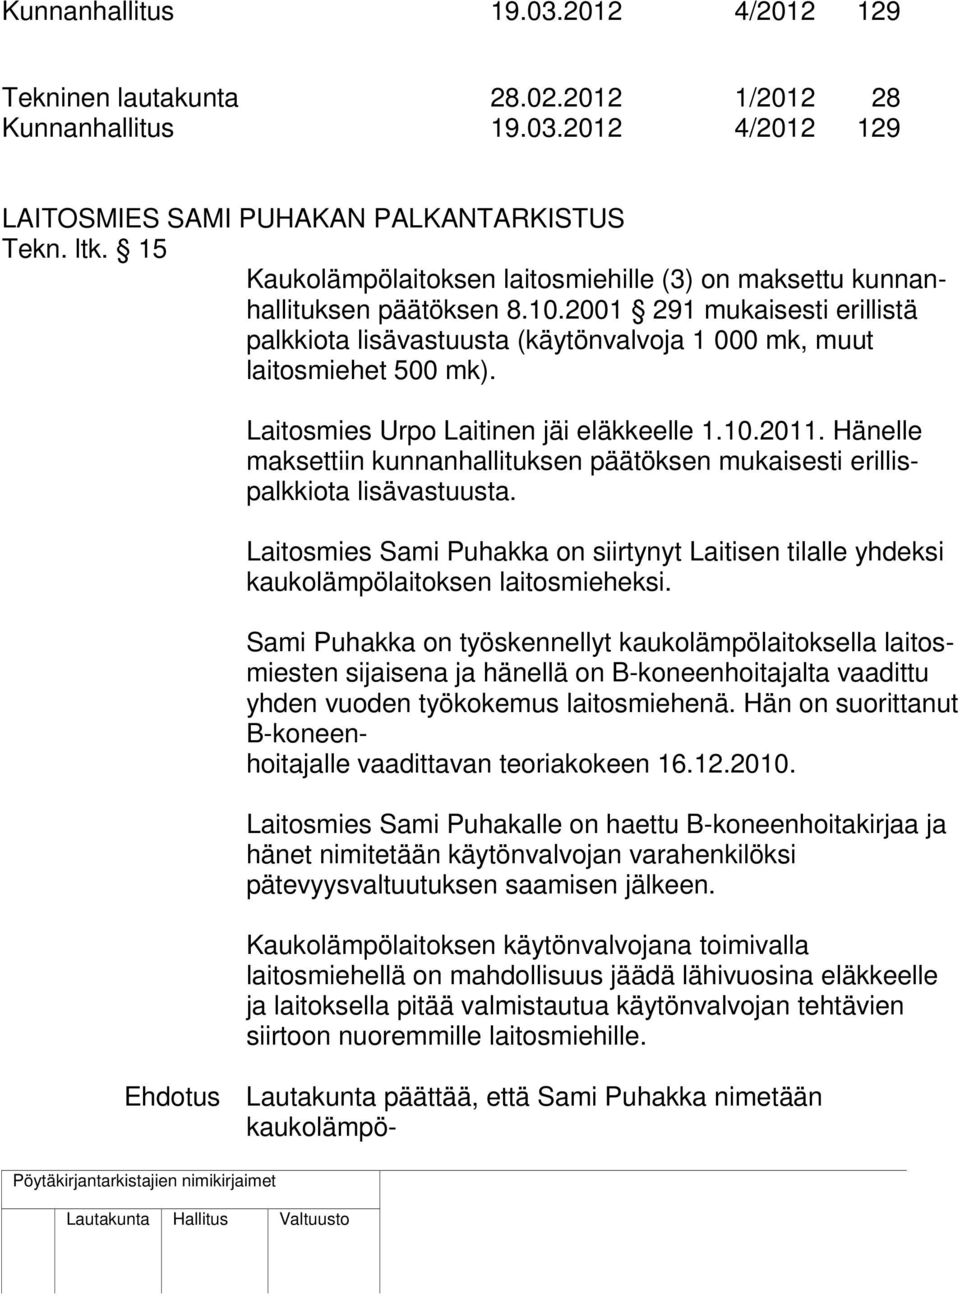 Laitosmies Urpo Laitinen jäi eläkkeelle 1.10.2011. Hänelle maksettiin kunnanhallituksen päätöksen mukaisesti erillispalkkiota lisävastuusta.